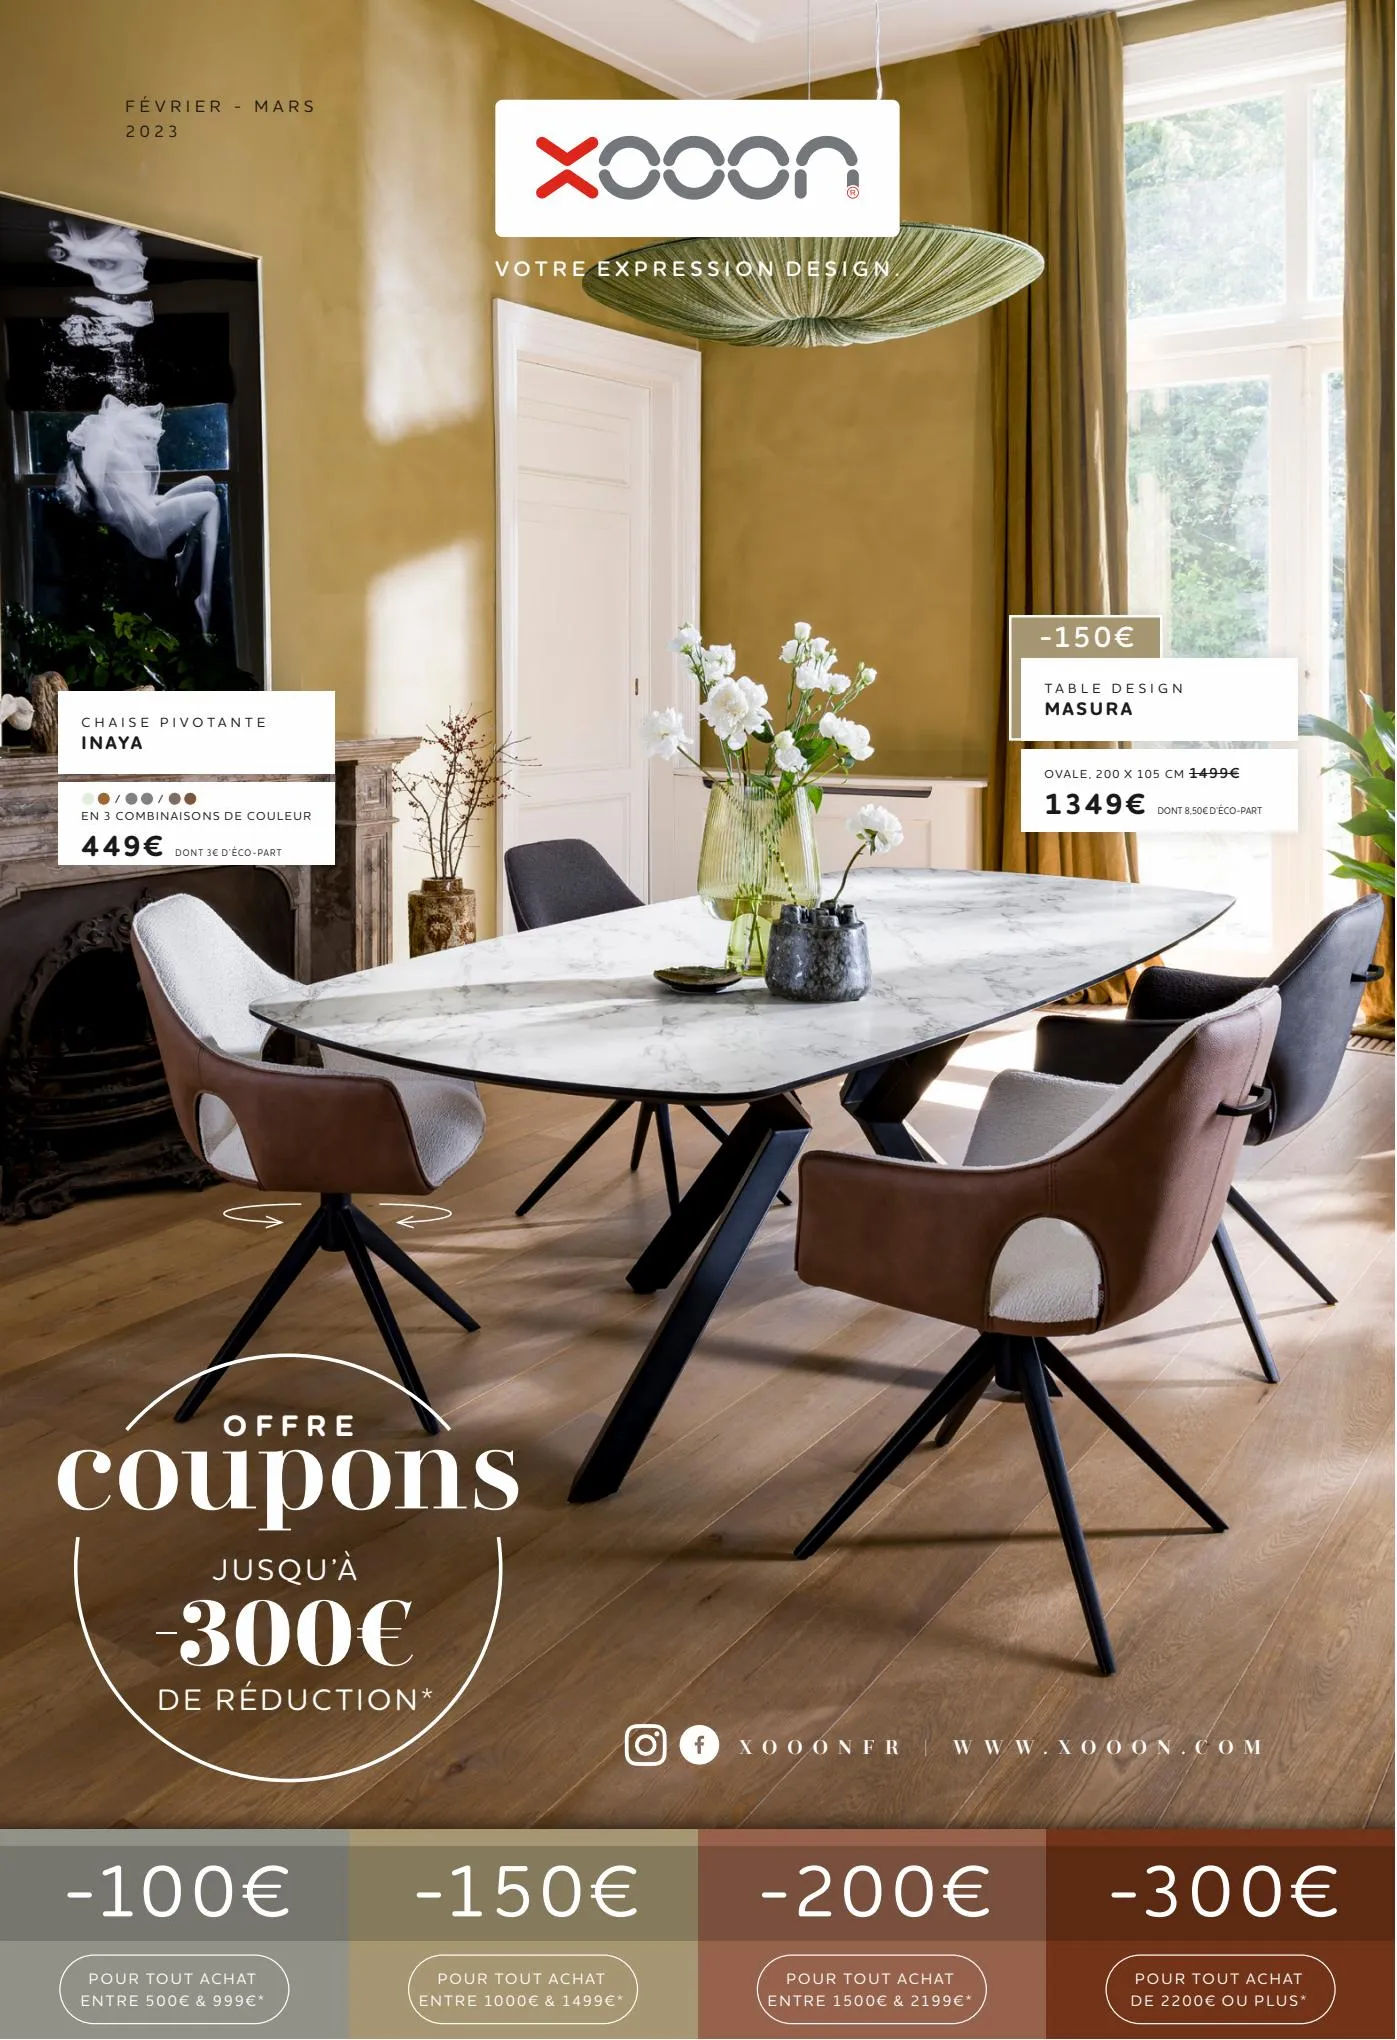 Catalogue Offre coupons JUSQU ’À  -300€  DE RÉDUCTION*, page 00001